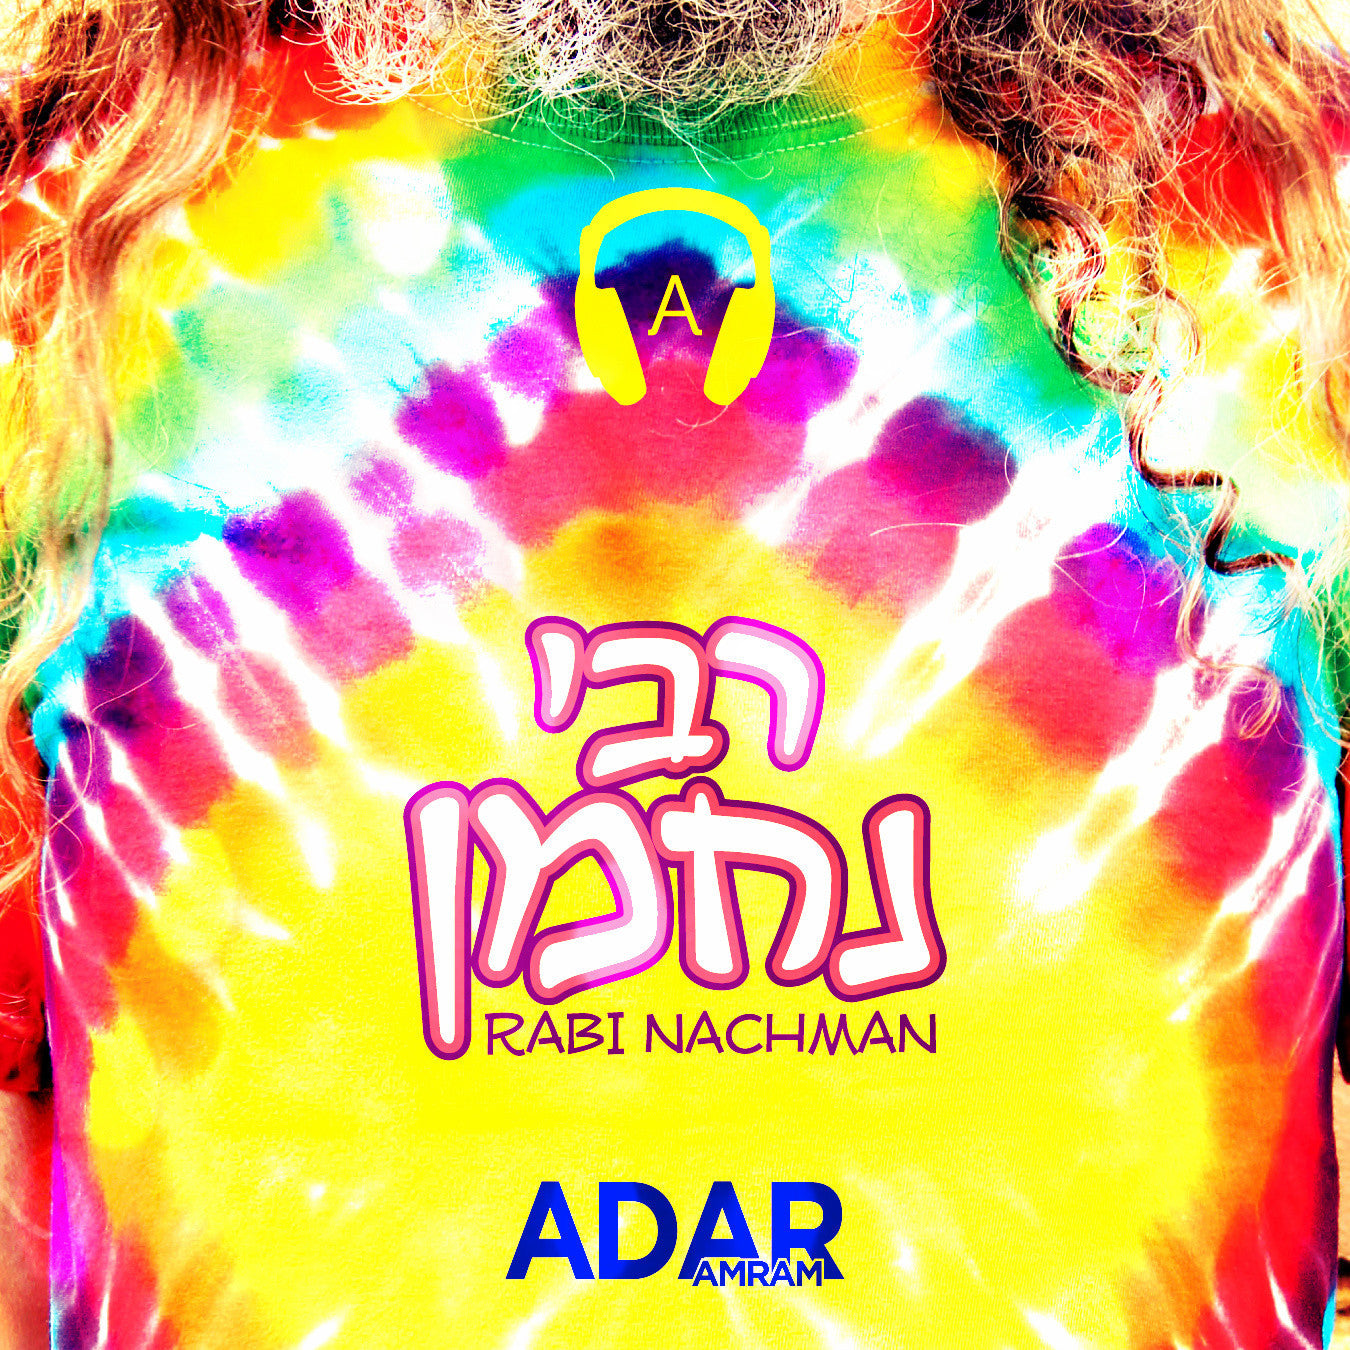 Amram Adar - Rabi Nachman (Single)